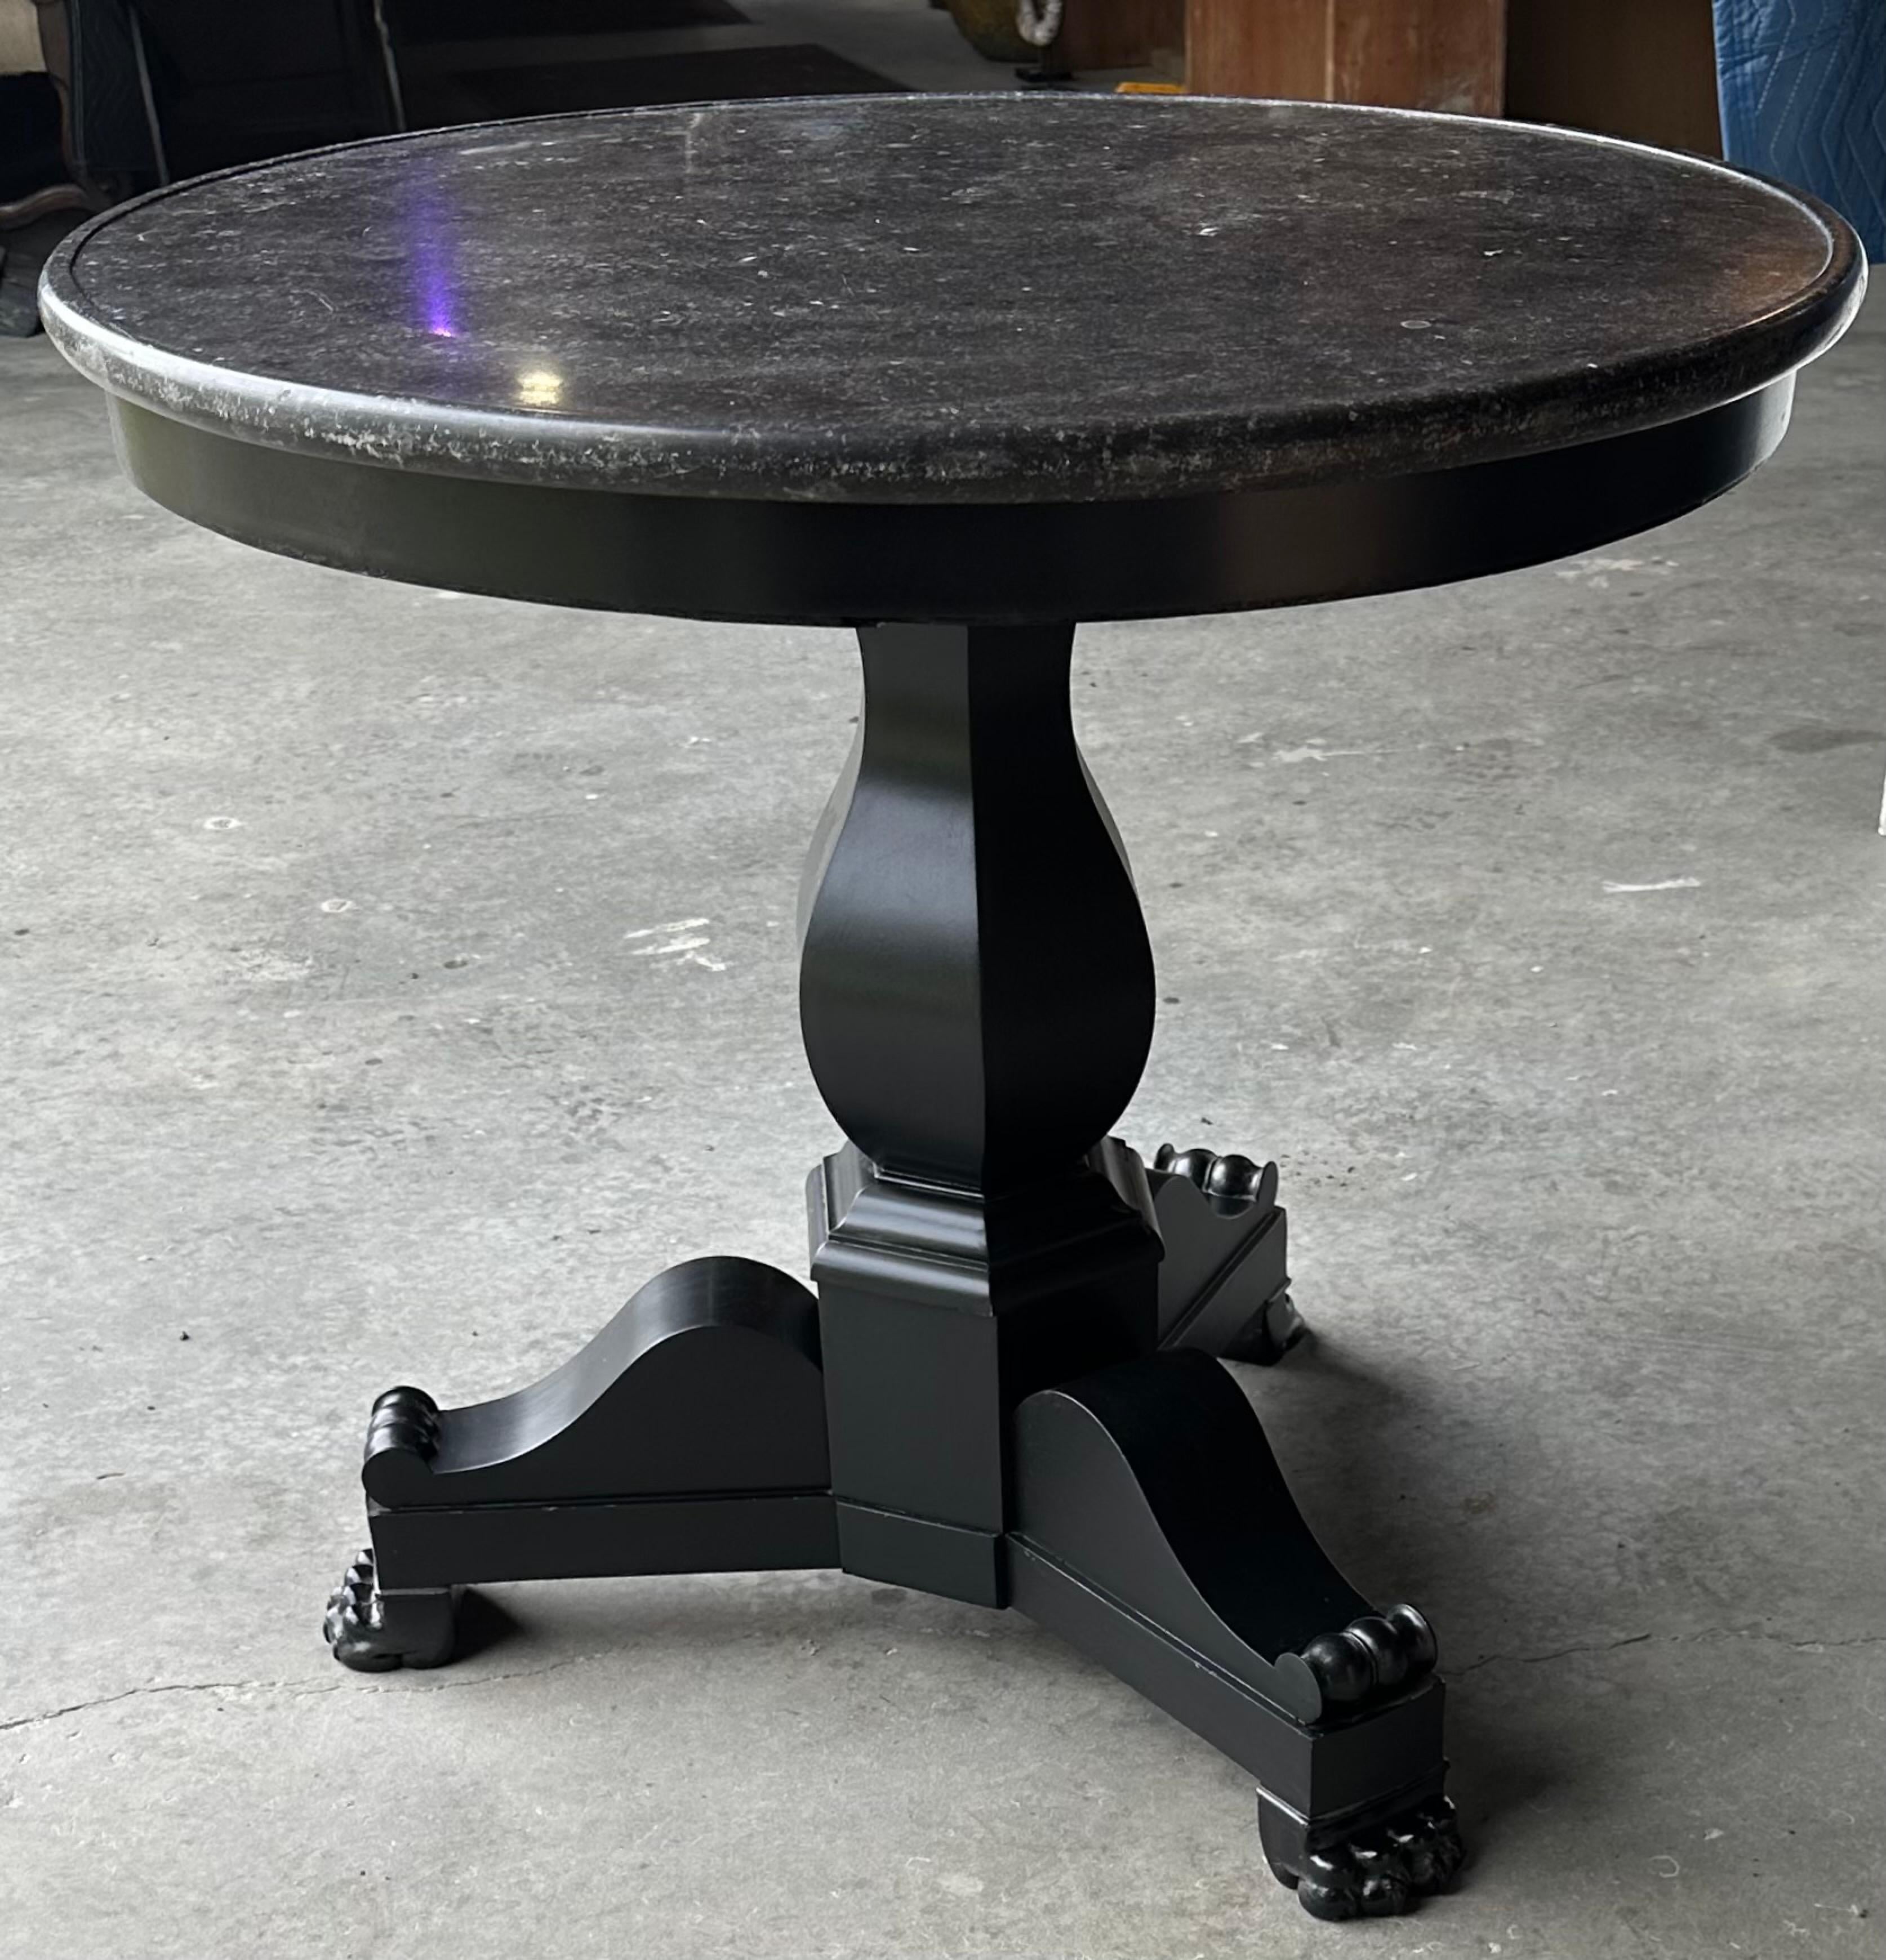 Ein sehr schöner runder Tisch im klassischen Empire-Stil mit einer dunkelgrauen/schwarzen Marmorplatte, die auf einem handgedrechselten schwarzen Mittelsockel steht.  Der Tisch kann als Frühstückstisch, Beistelltisch oder als Beistelltisch verwendet